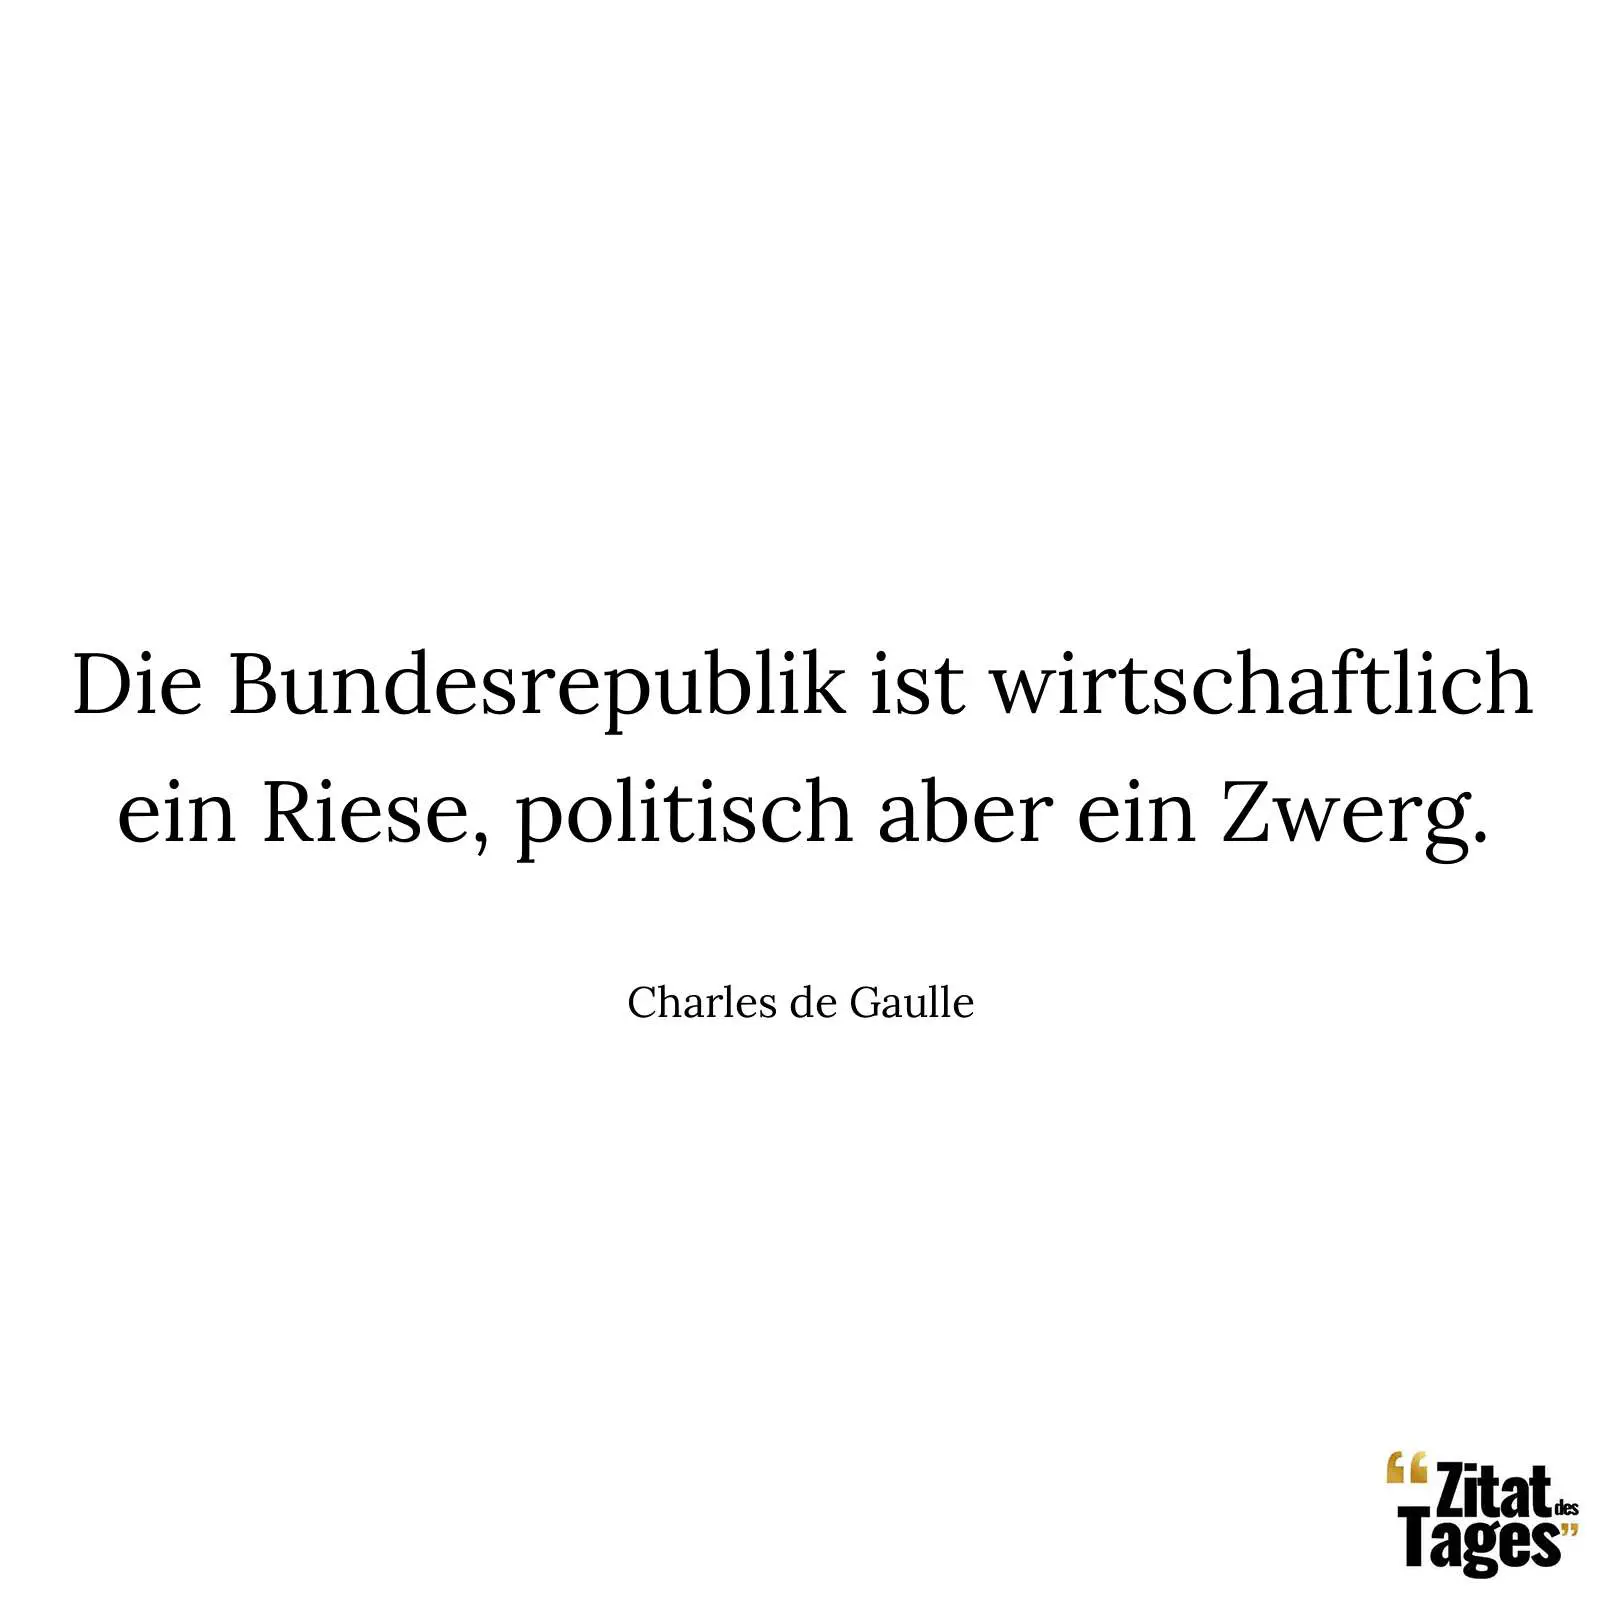 Die Bundesrepublik ist wirtschaftlich ein Riese, politisch aber ein Zwerg. - Charles de Gaulle